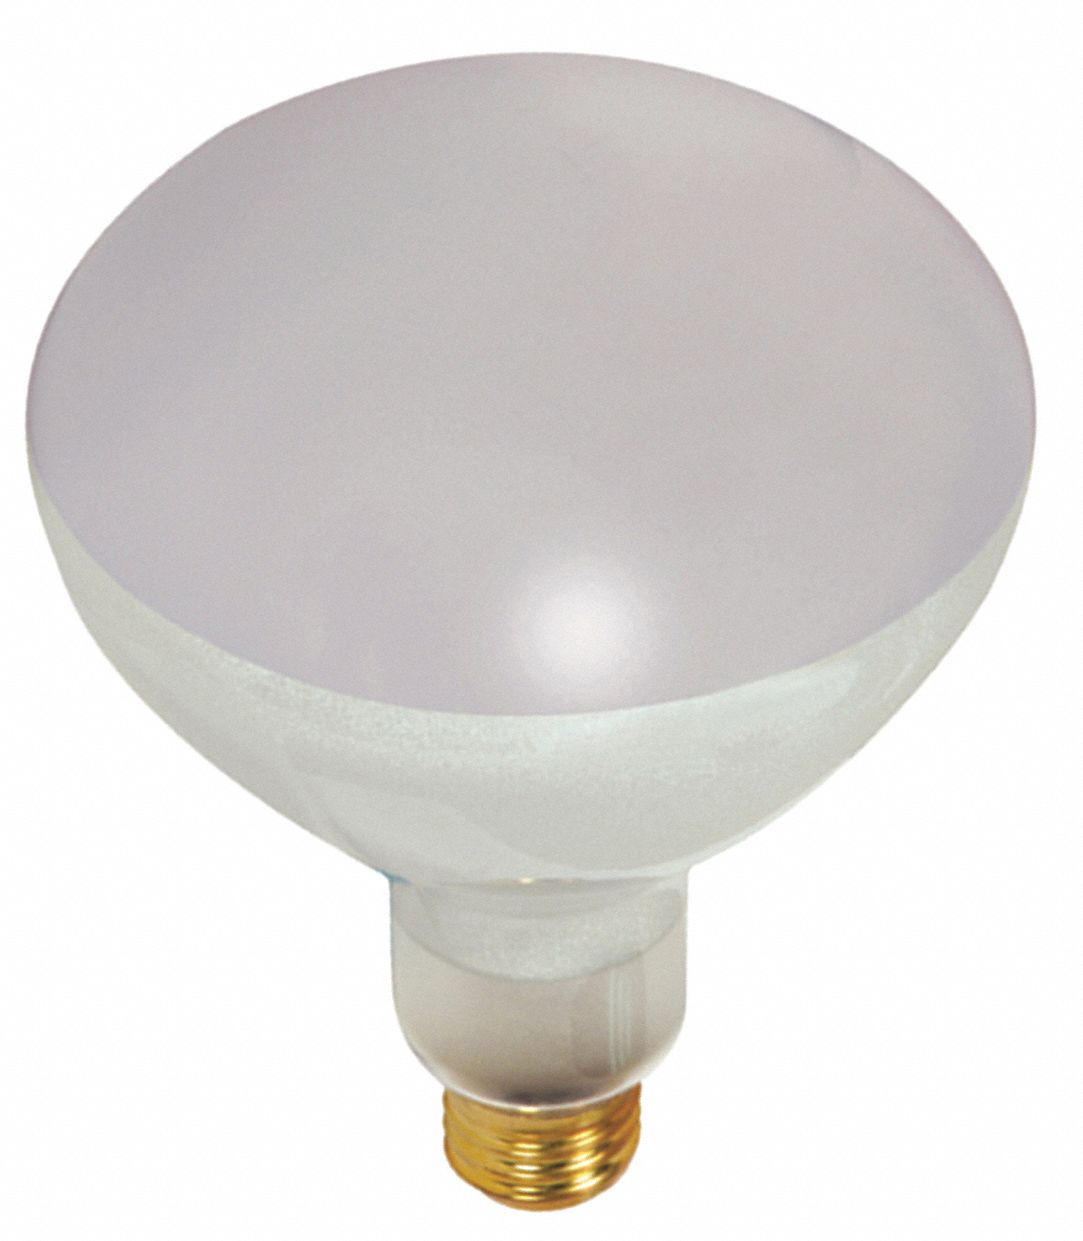 Incandescent Reflector Bulb: Incandescent, BR40, Medium Screw (E26), 500 W Watt, 2700K, S7007